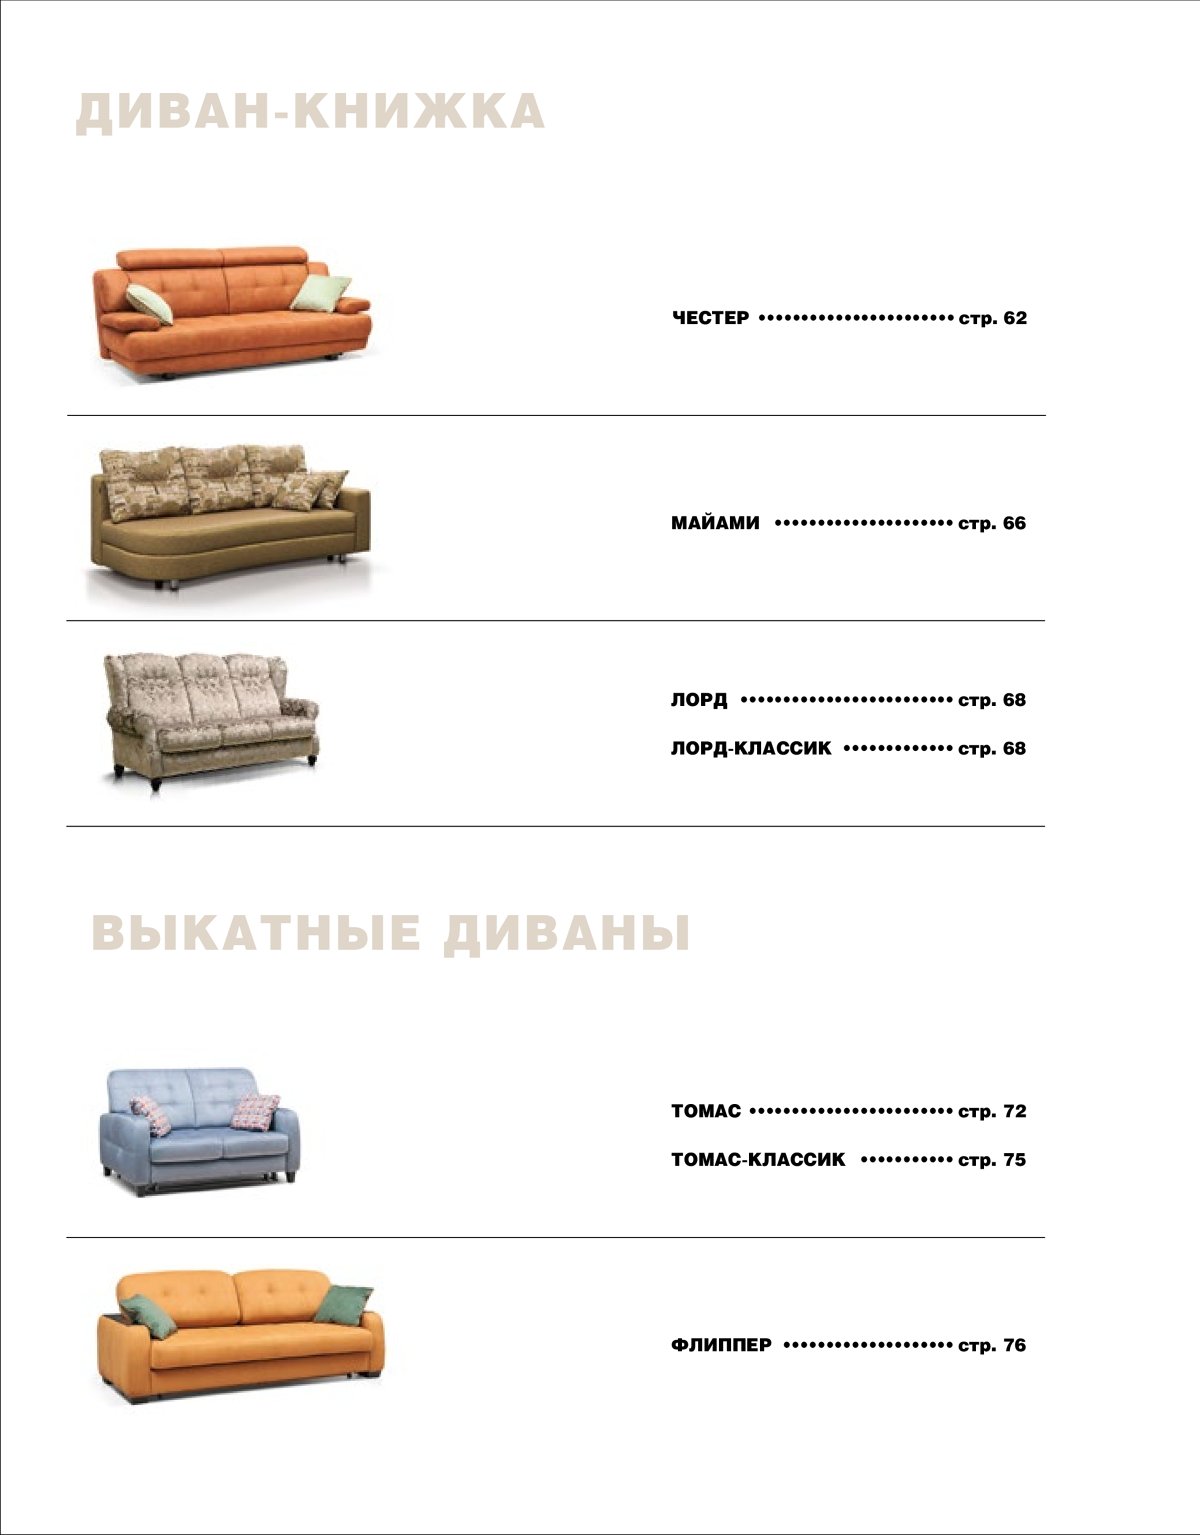 Комплектующие для диванов 8 марта